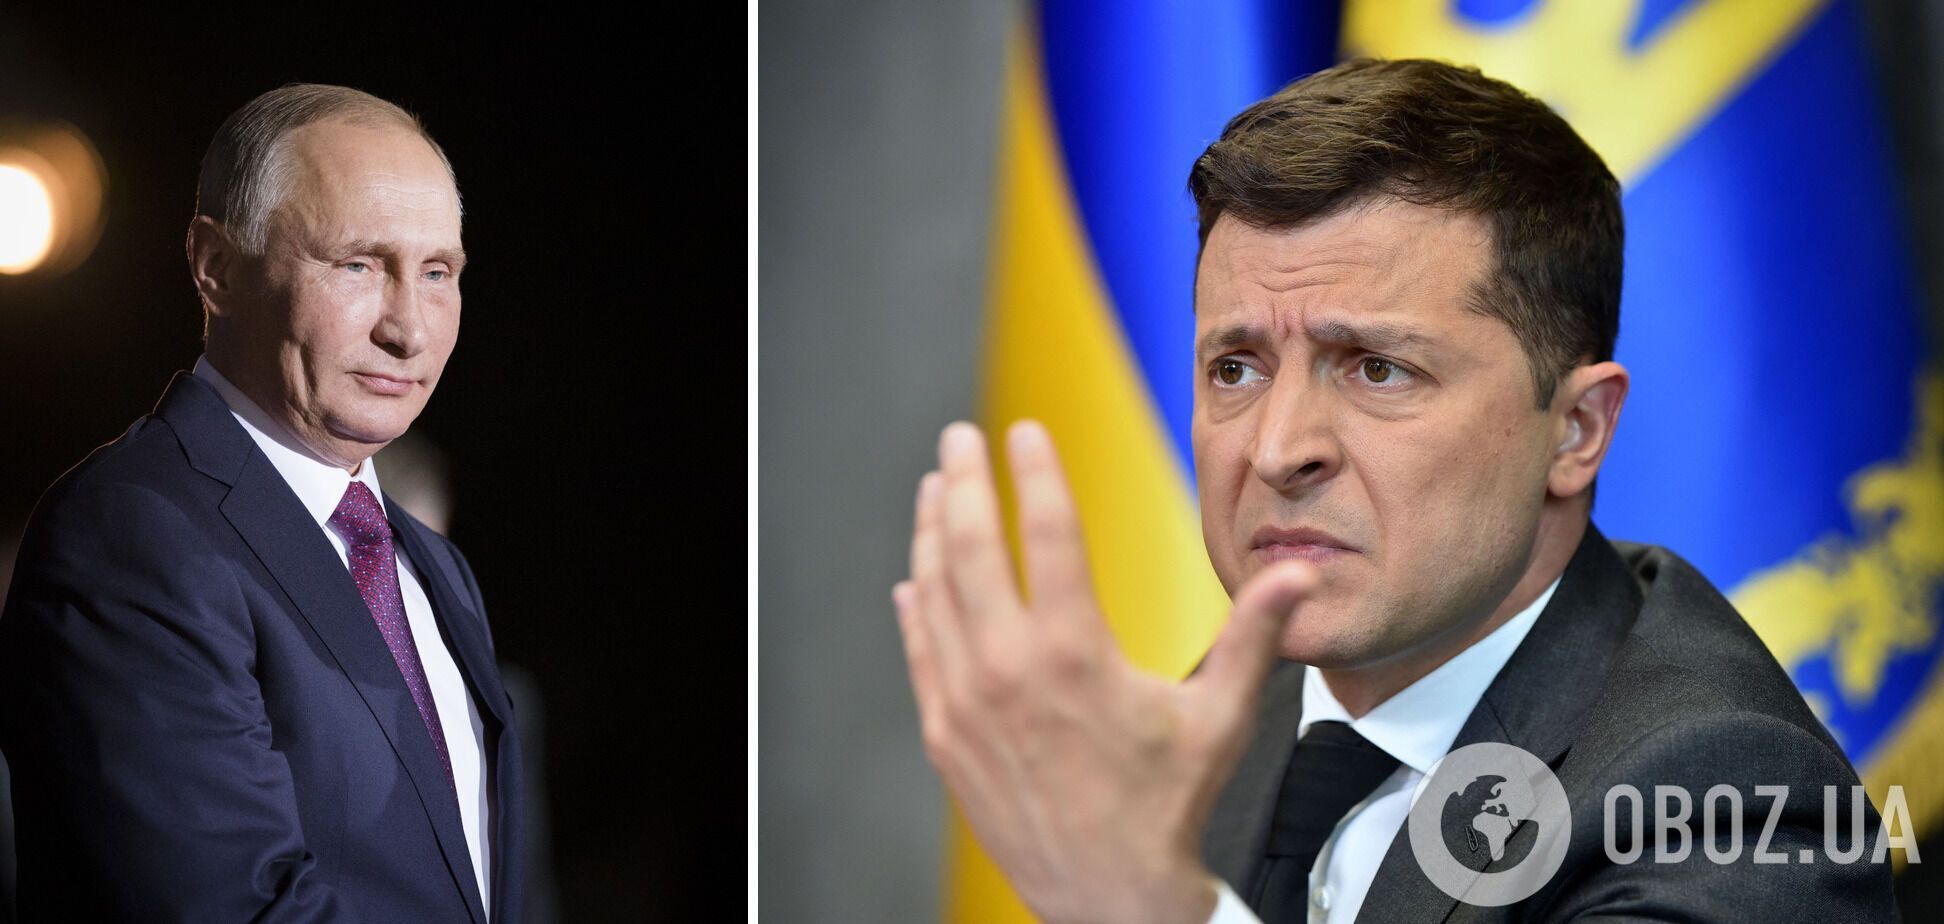 Зеленский выступил за санкции против РФ сейчас, а не в случае реализации ее новой агрессии против Украины